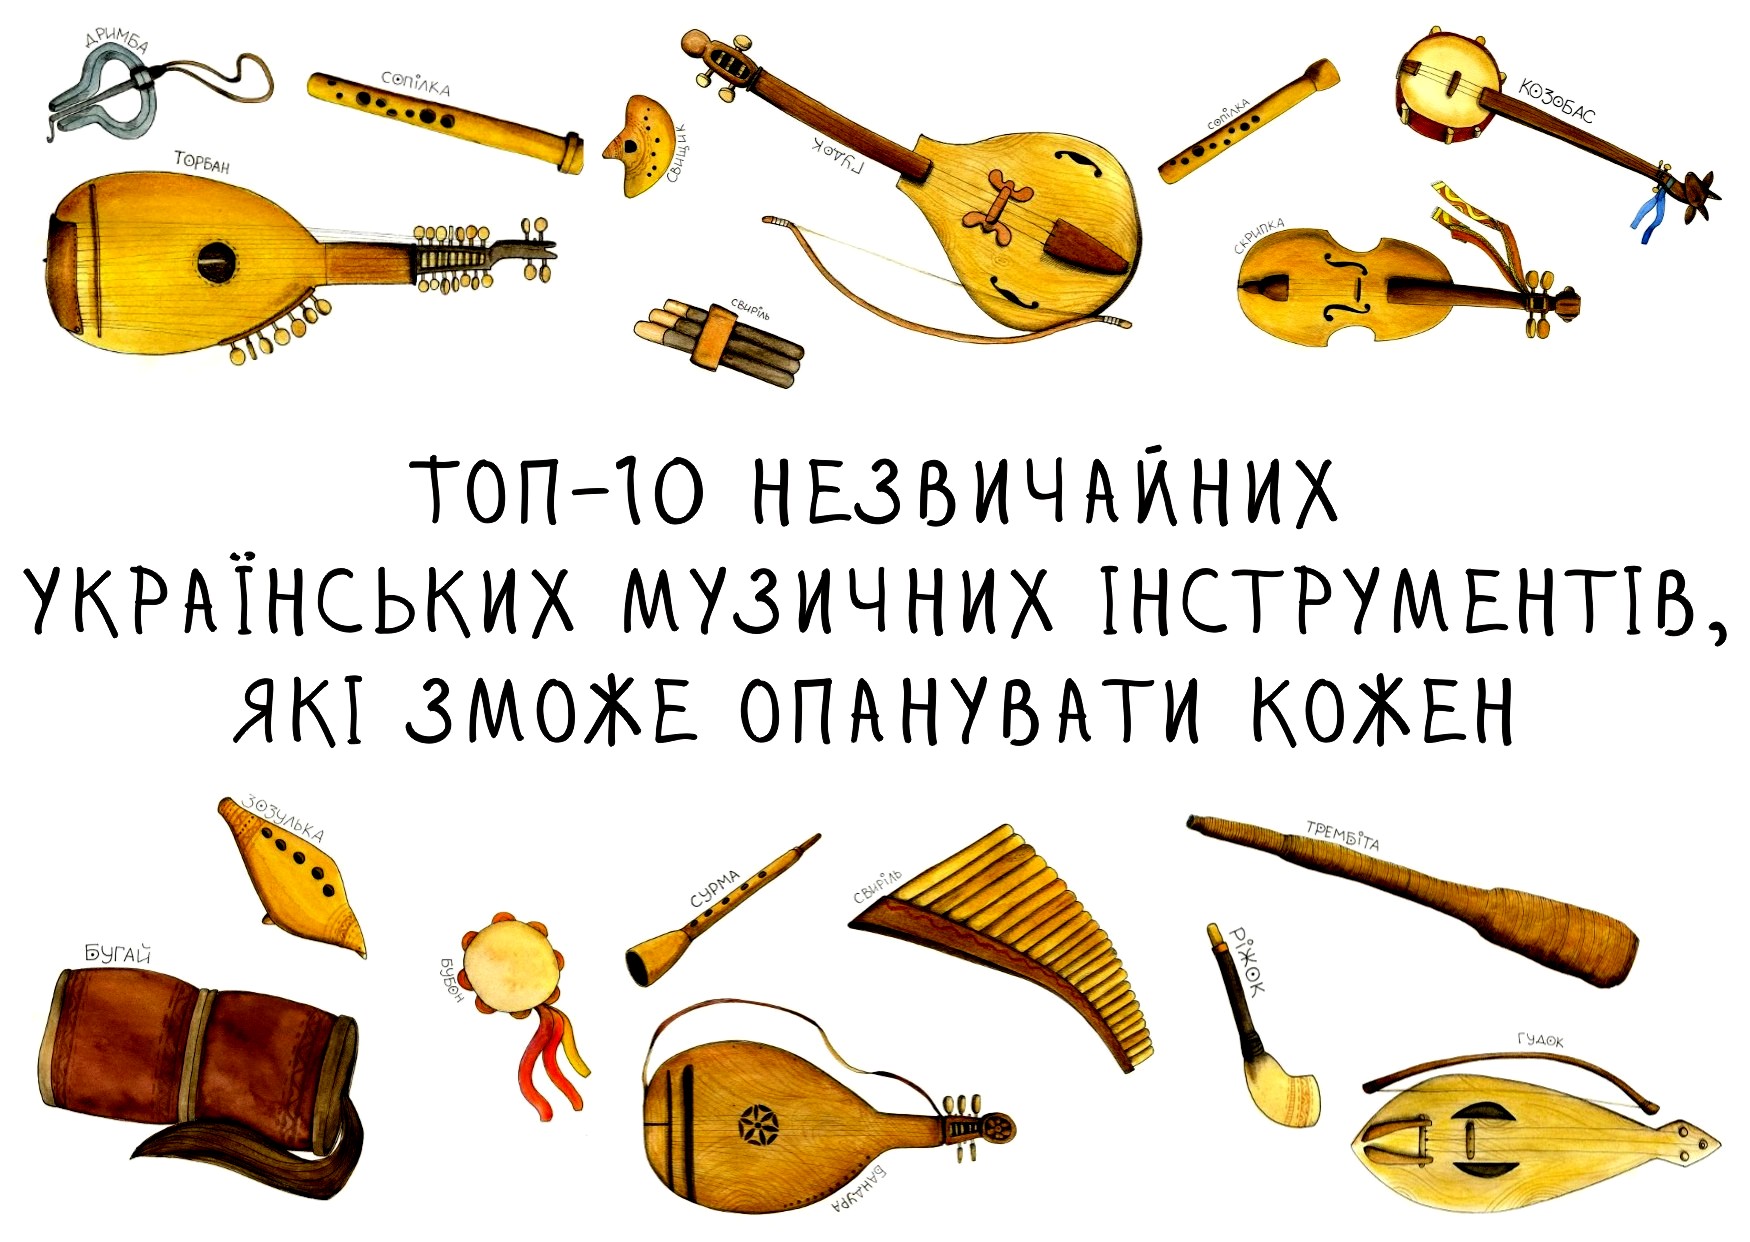 ukrainemusic